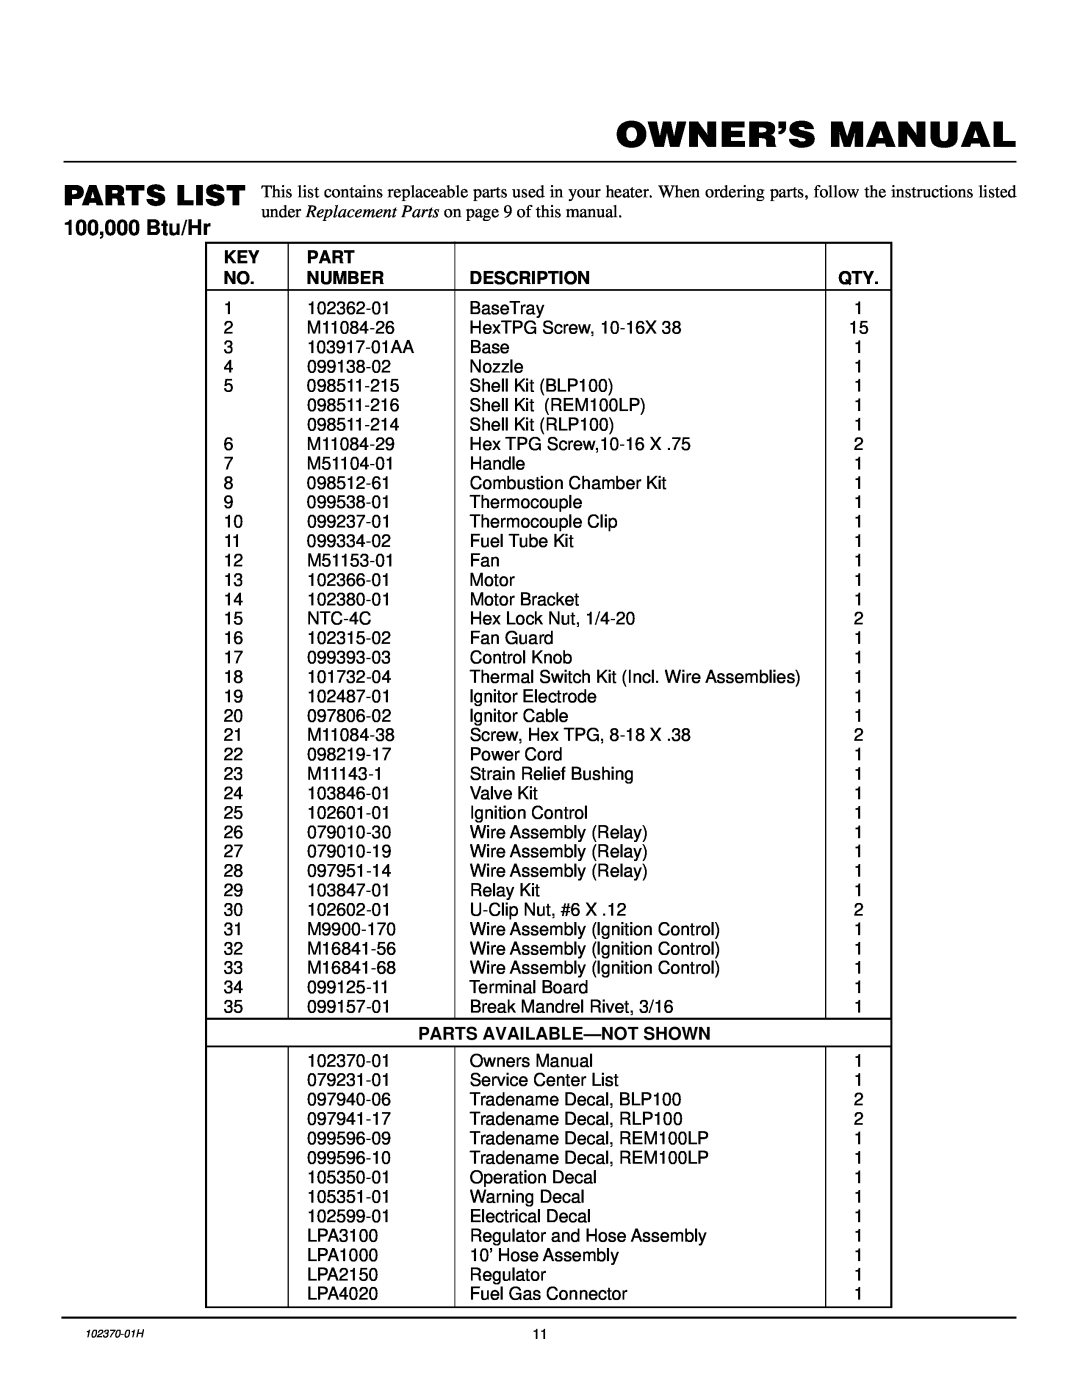 Desa PROPANE CONSTRUCTION HEATERS owner manual Parts List, Number, Description, Parts Available-Notshown 